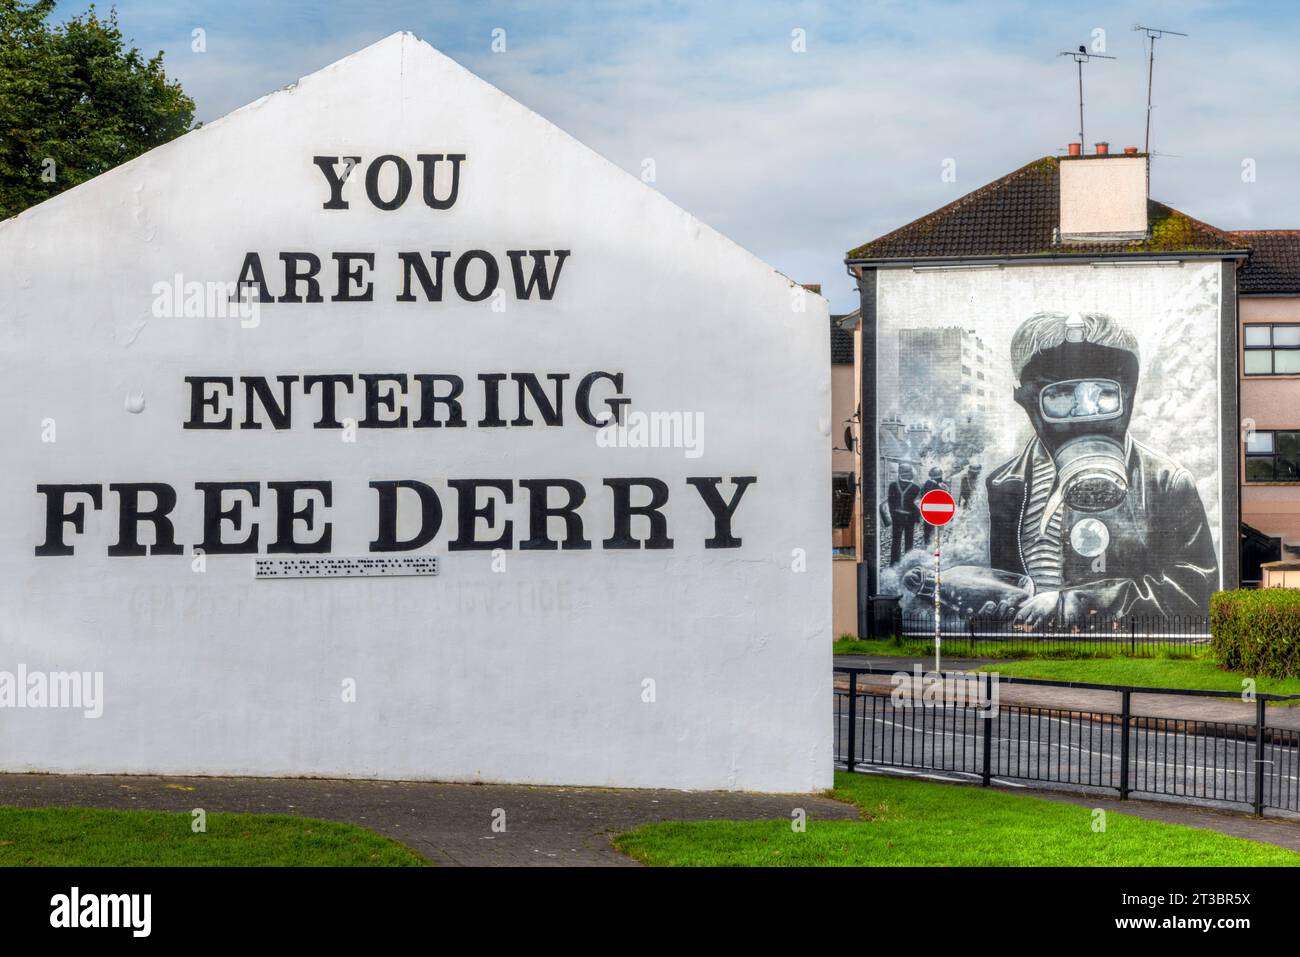 Die Wandmalereien von Derry, Nordirland, sind eine einzigartige und mächtige Form öffentlicher Kunst, die die Geschichte der schwierigen Vergangenheit der Stadt erzählt. Stockfoto